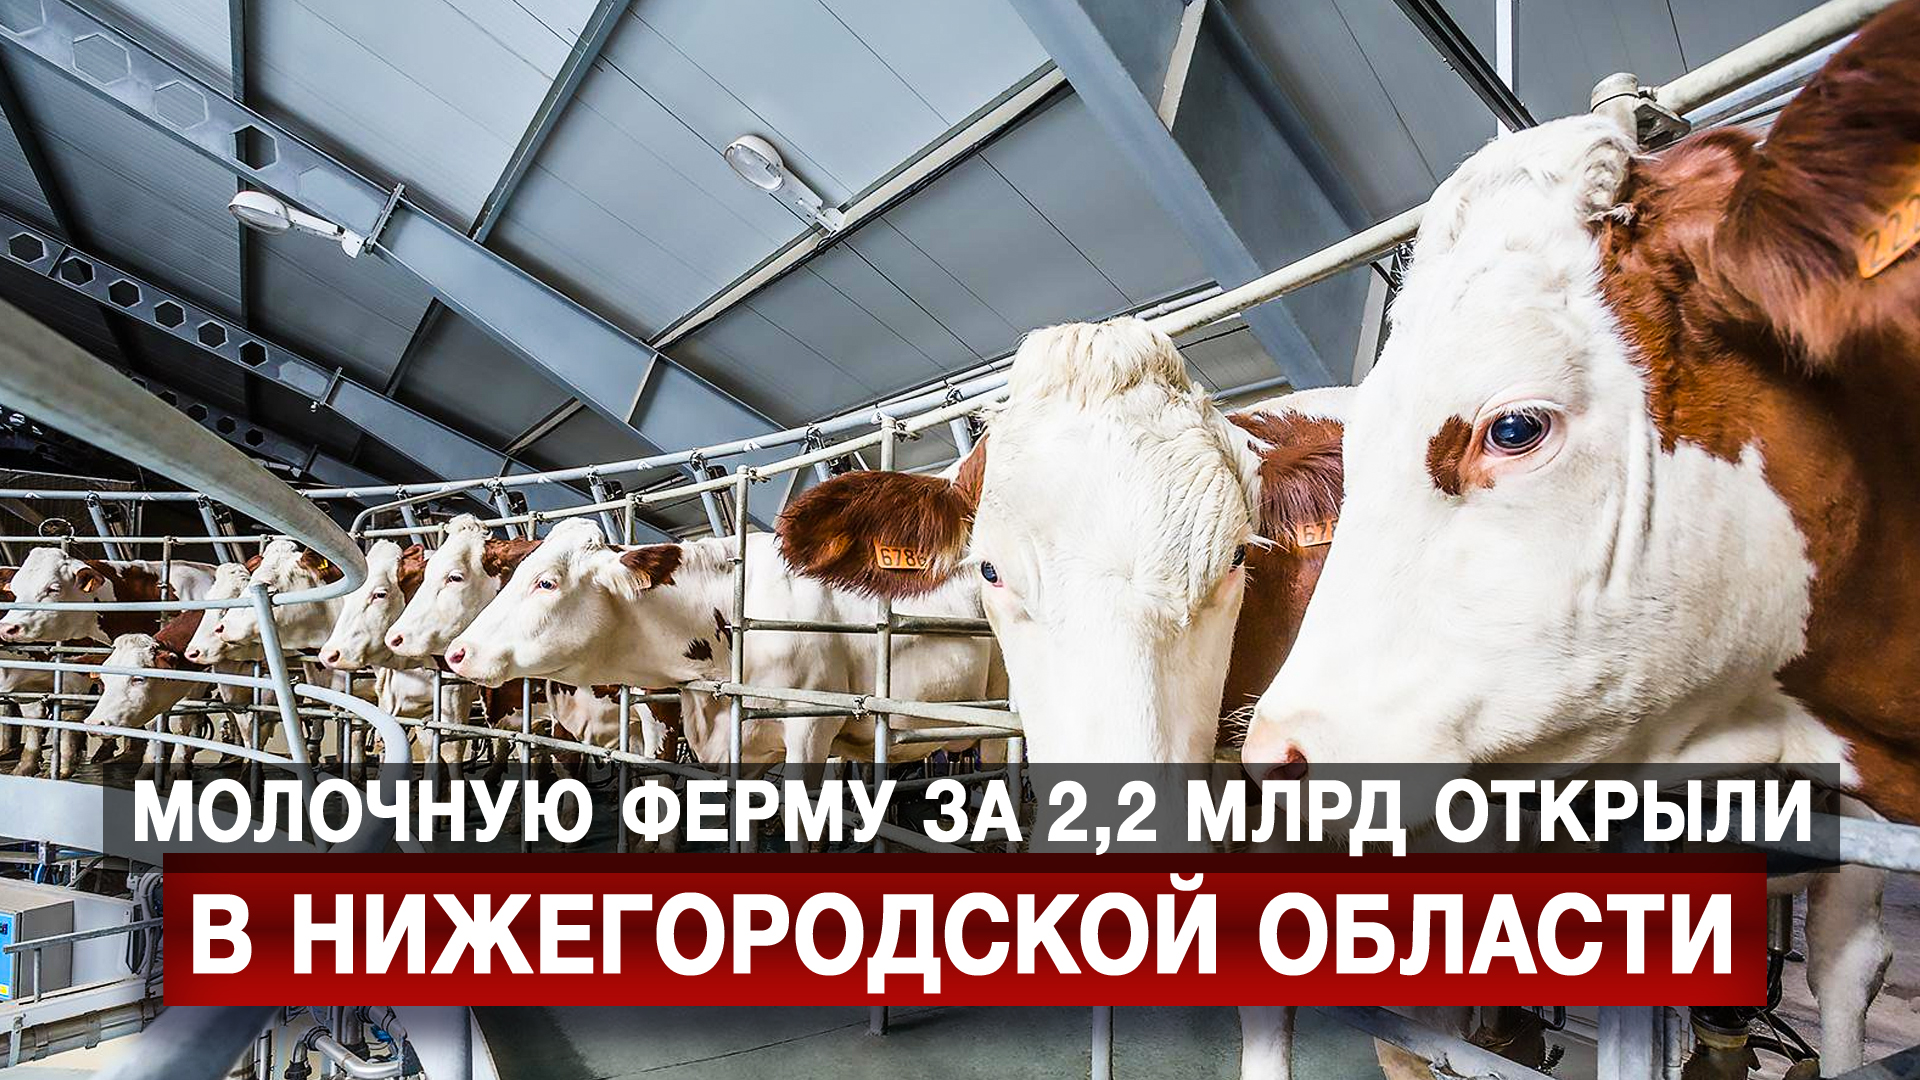 Молочную ферму за 2,2 млрд открыли в Нижегородской области